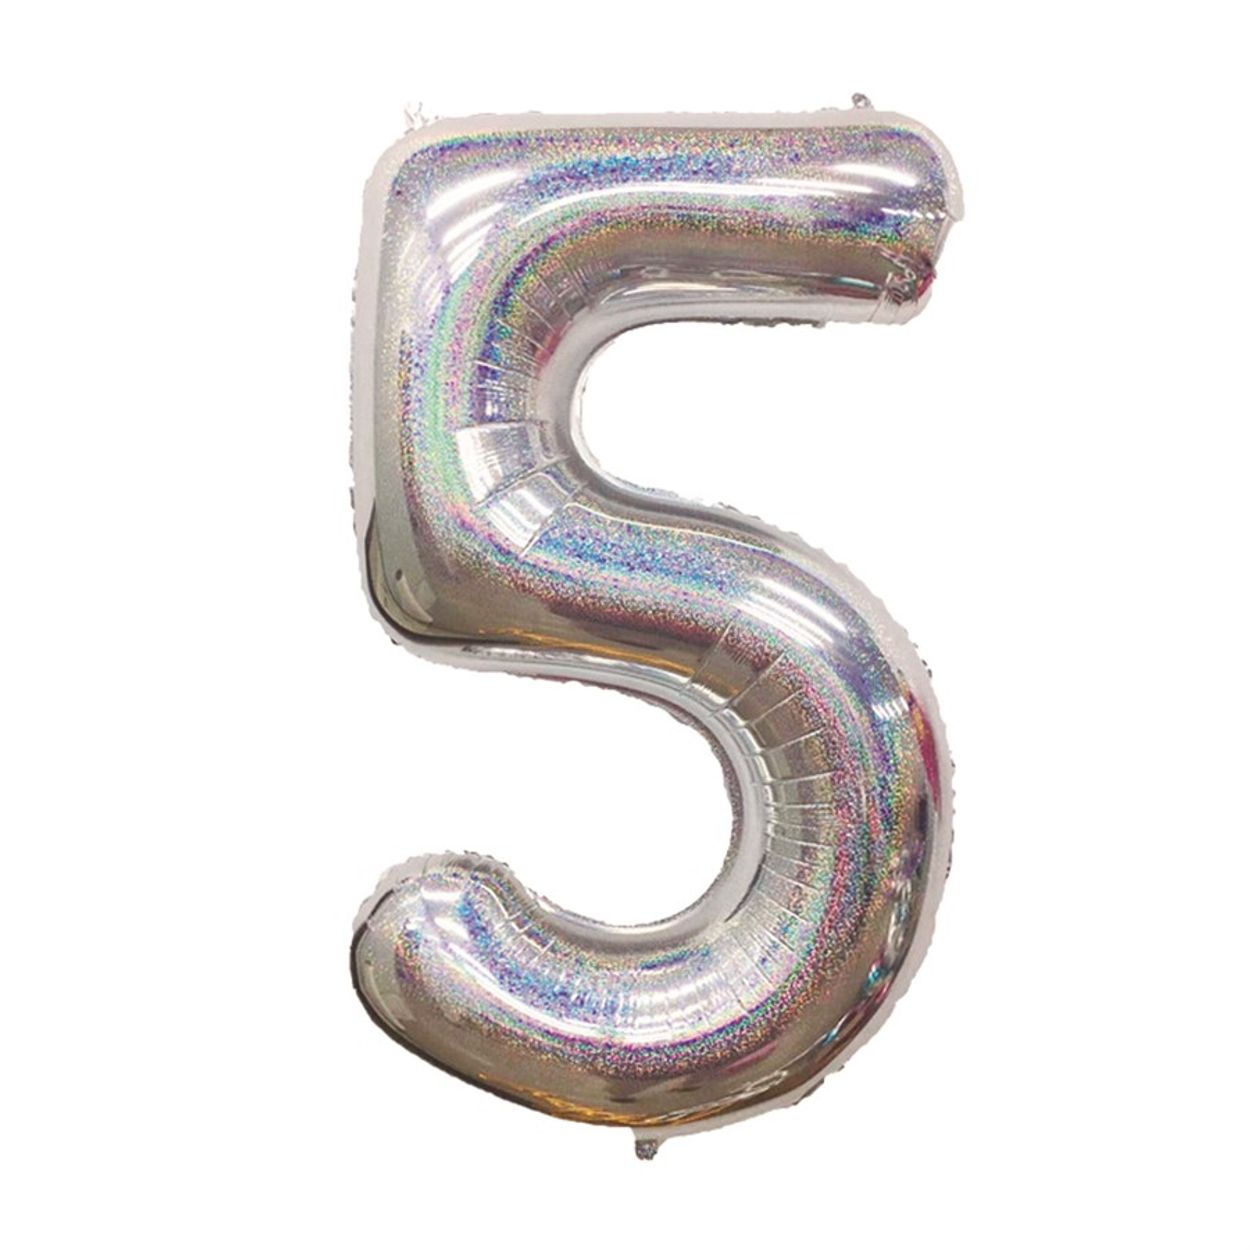 Topo de bolo com 15 unidades, cristais brilhantes de para artigos de festa  de aniversário de 15 anos ou aniversário (prata)